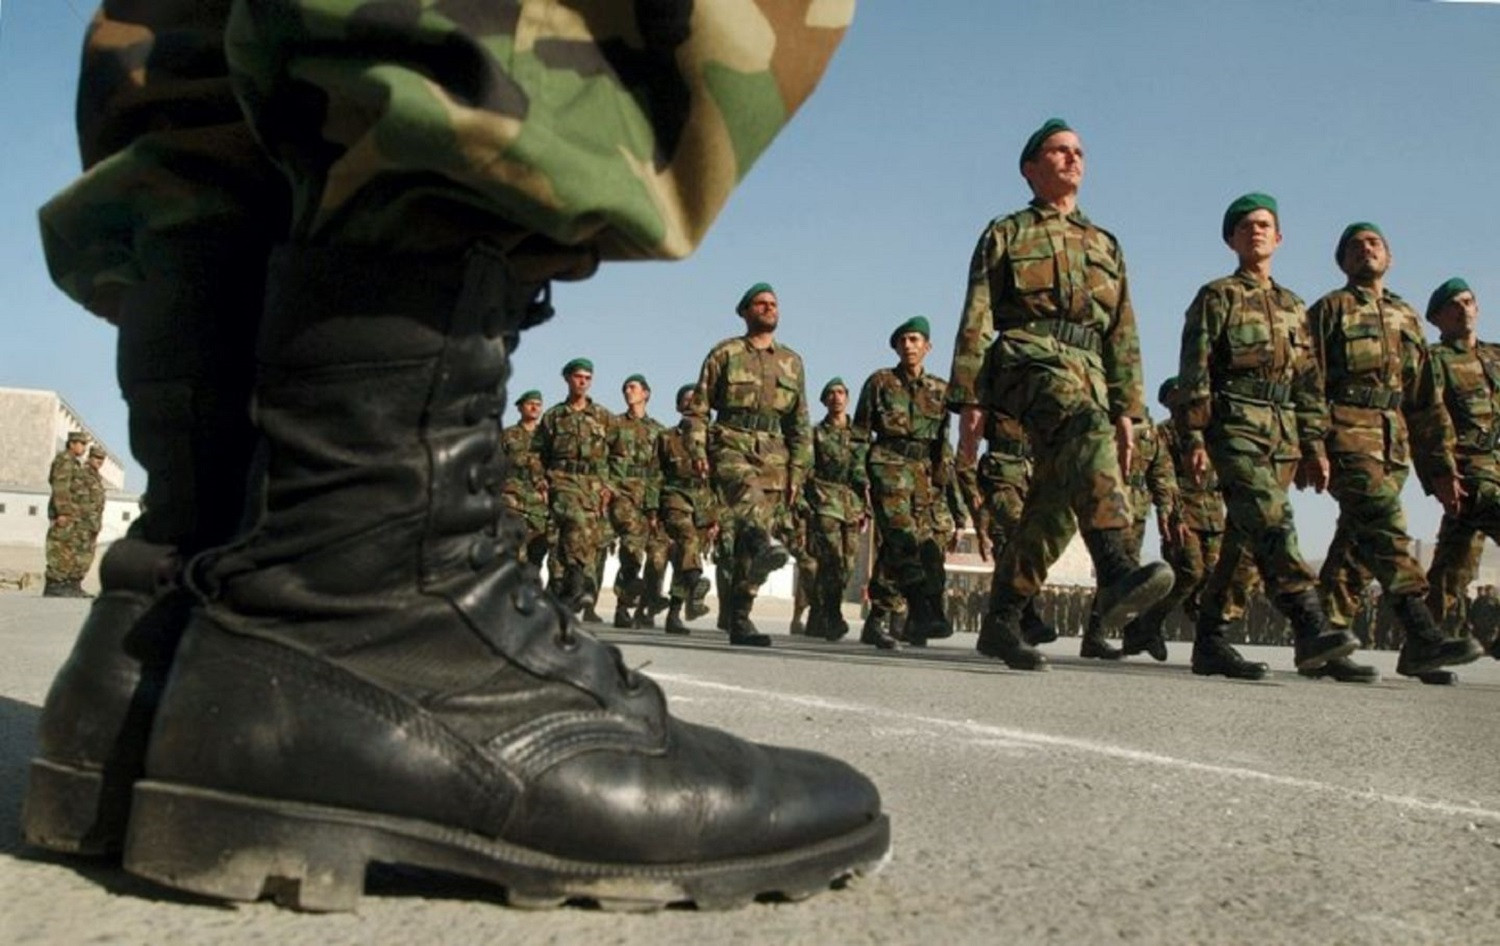 Ευχαριστήρια επιστολή του ΓΓ Εθνικής Άμυνας σε ένστολους και πολιτικό προσωπικό: «Σταθήκατε στο ύψος των περιστάσεων»